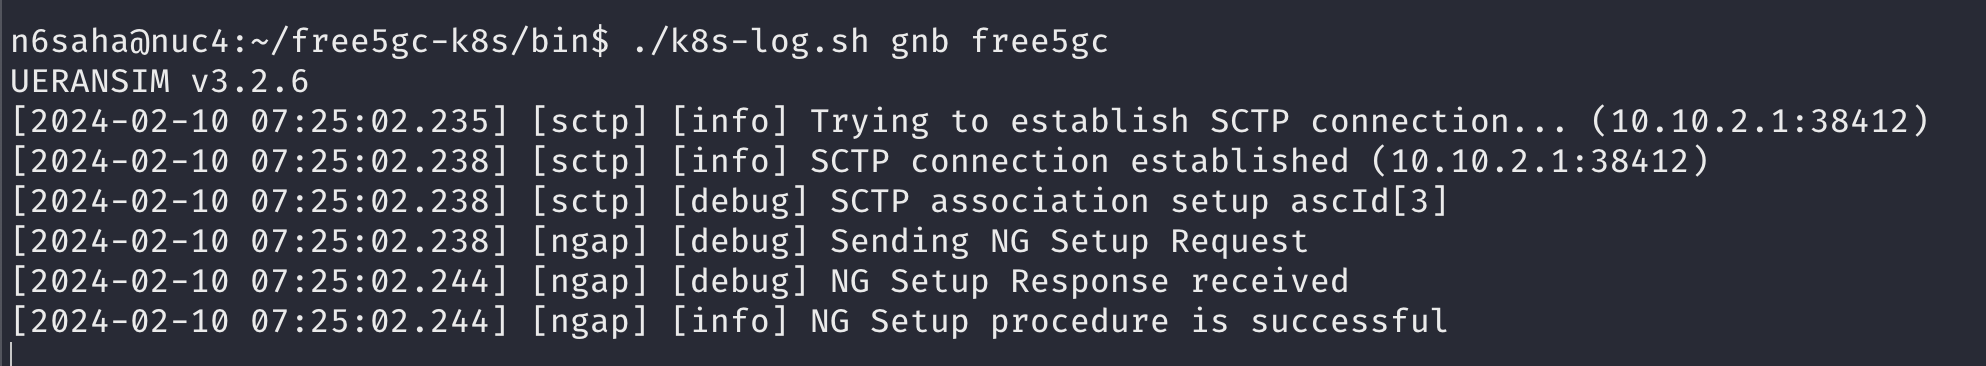 NGAP connection success